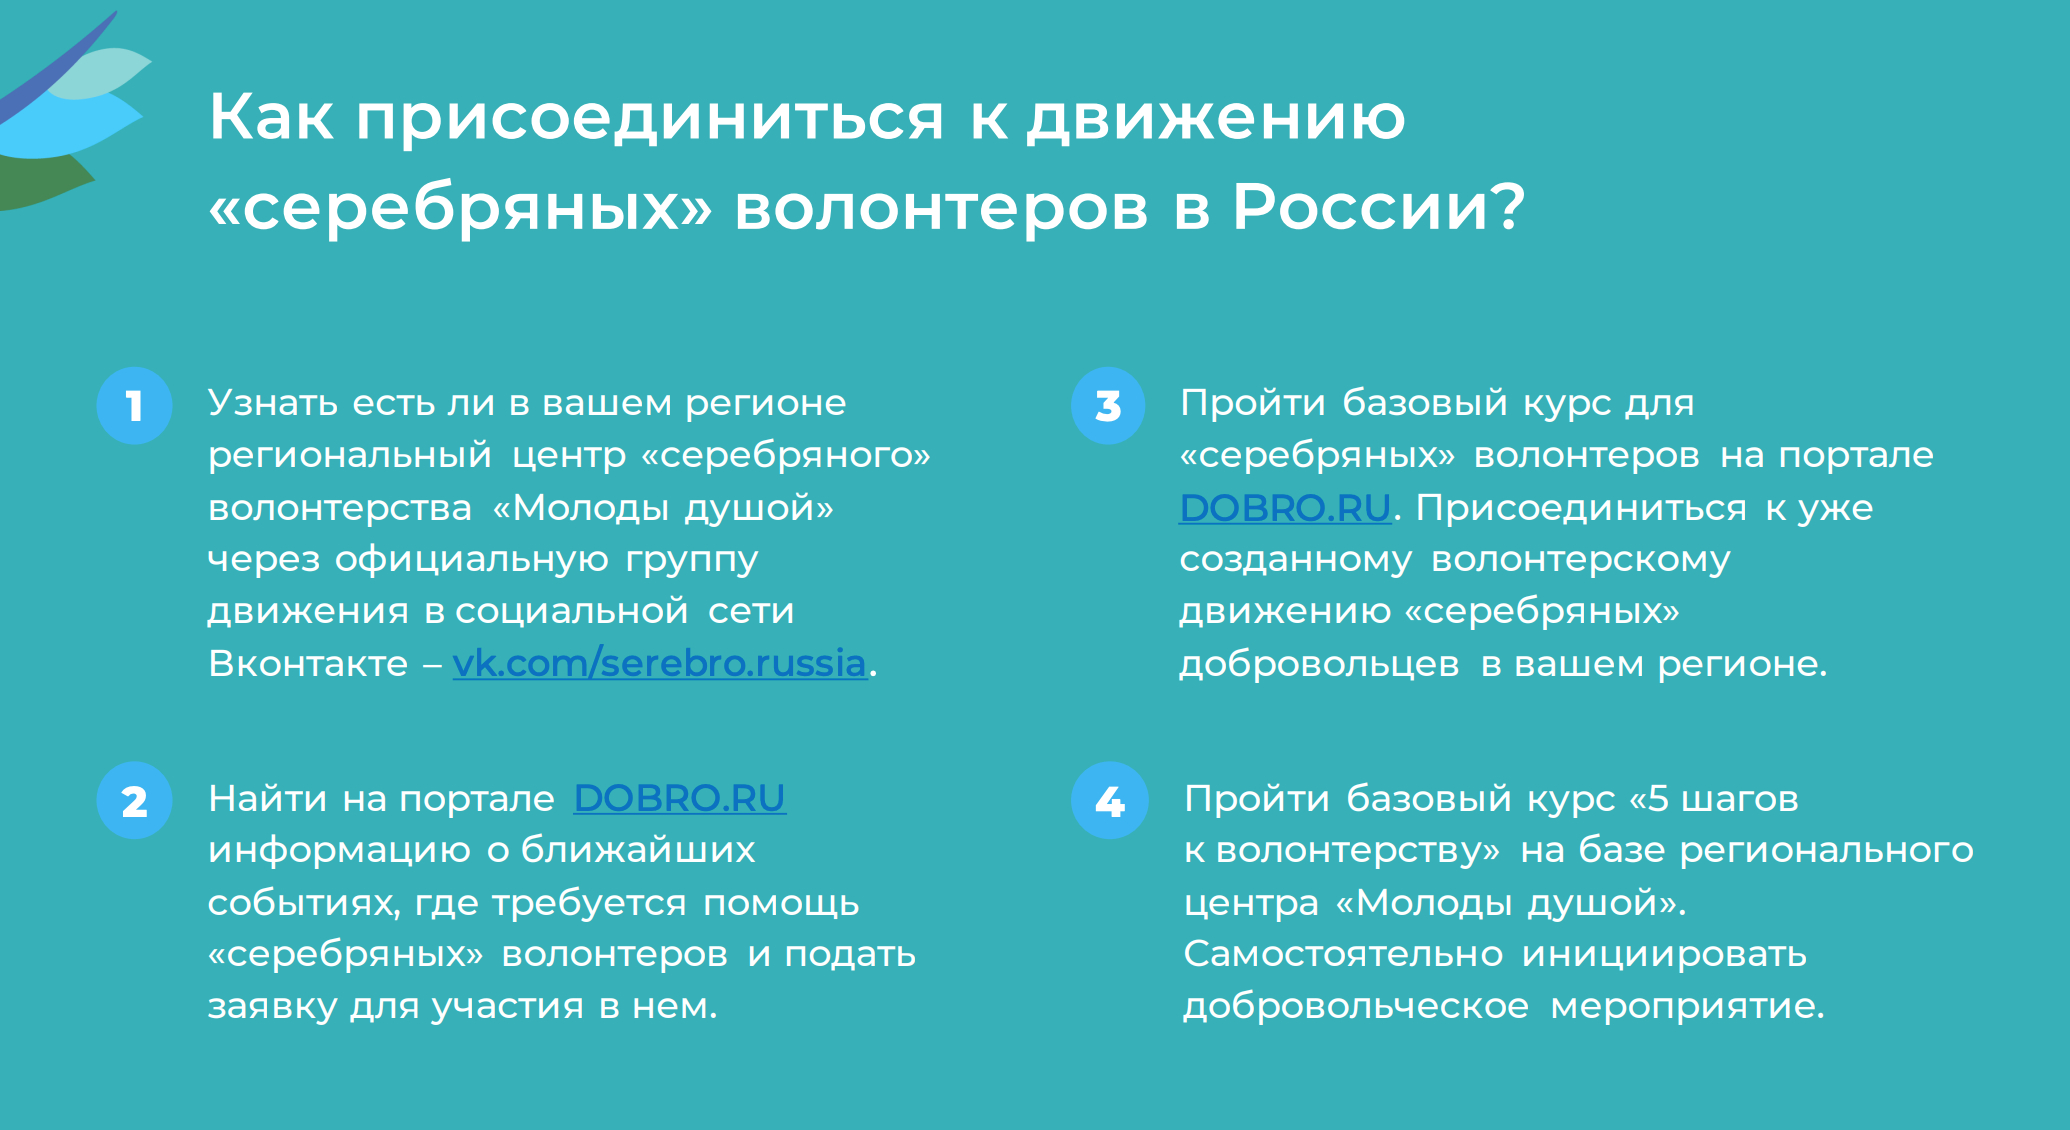 Чтобы присоединиться к движению серебряных волонтеров, придется пройти специальный курс. Источник: edu.dobro.ru